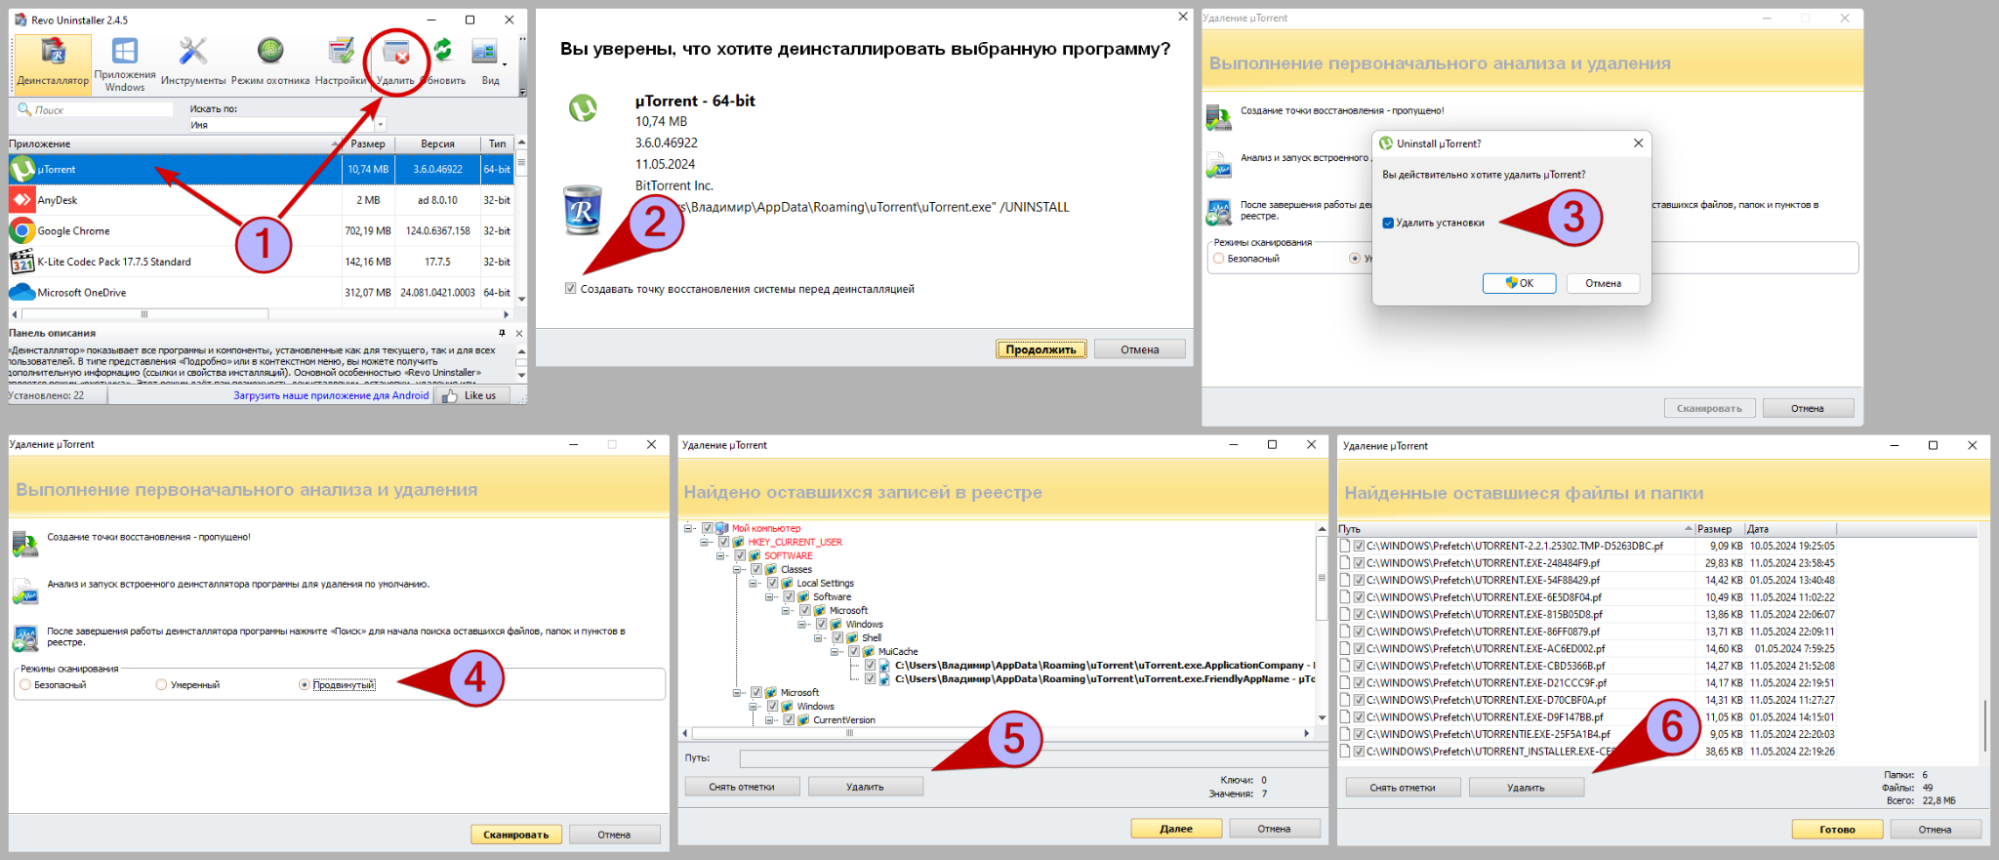 Пошаговый процесс деинсталляции uTorrent с помощью Revo Uninstaller: выбор программы, подтверждение удаления, очистка реестра и удаление оставшихся файлов, показано на шести скриншотах.